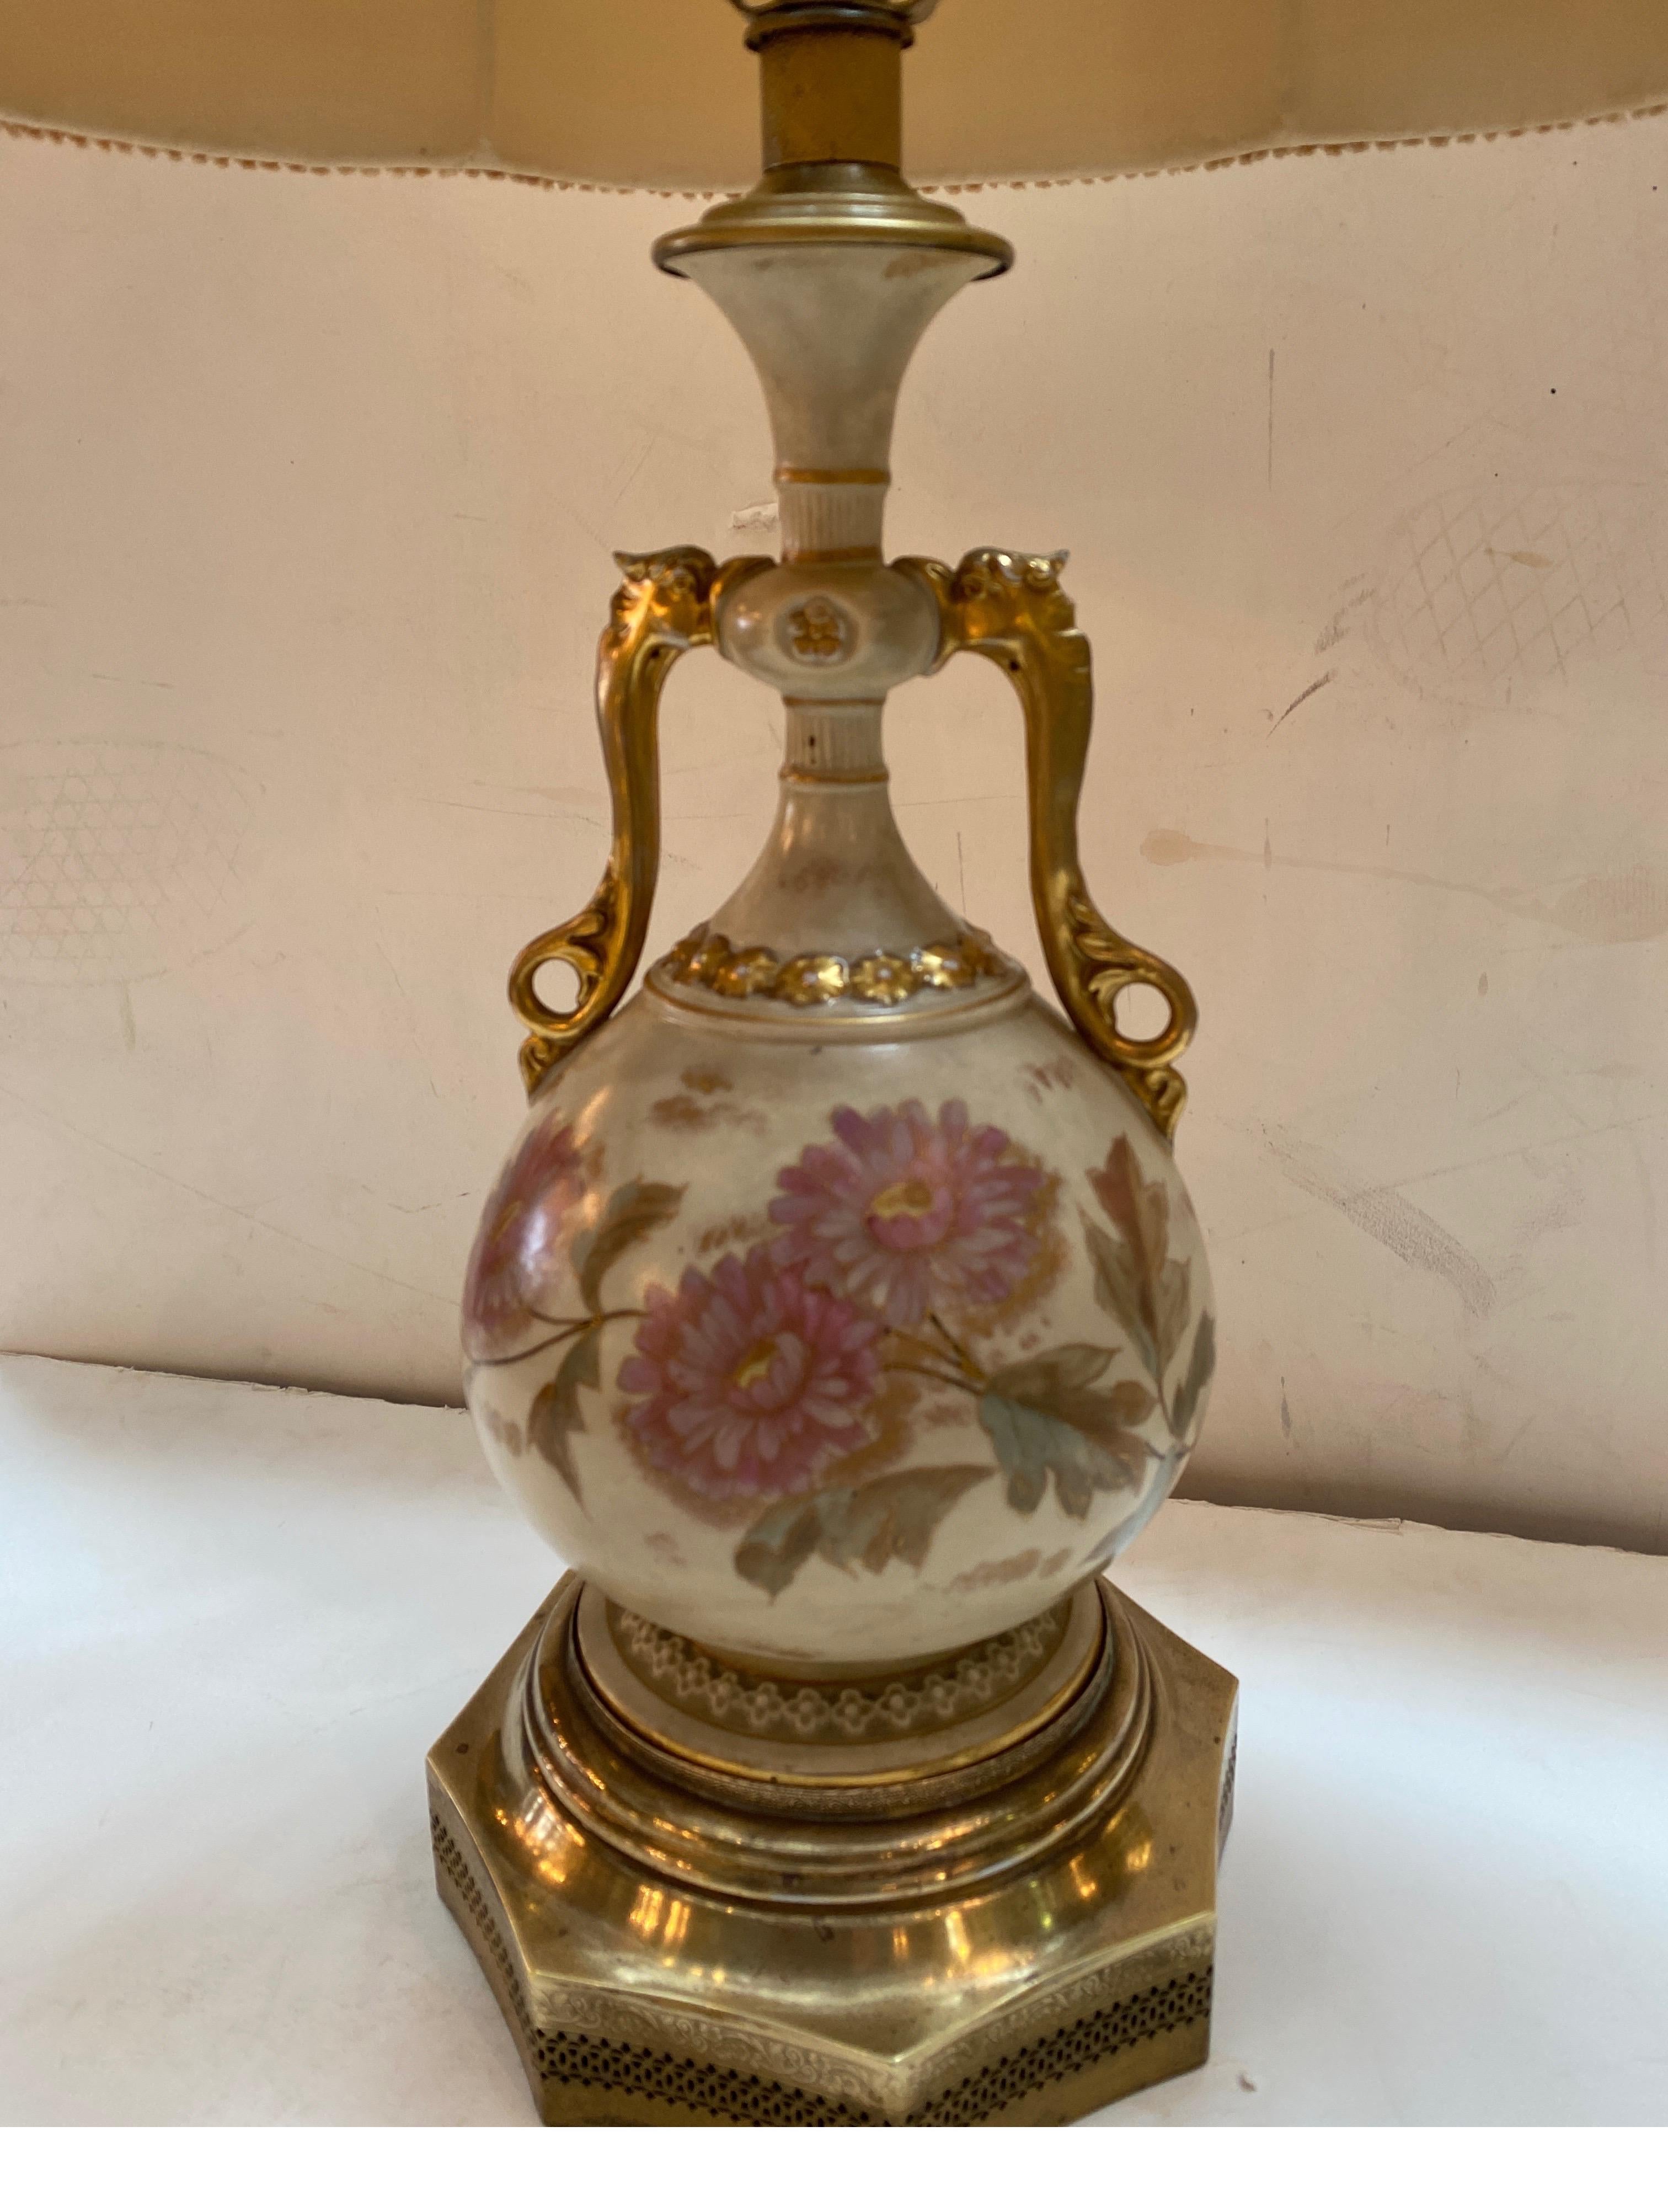 Un vase anglais du 19ème siècle Royal Worchester peint à la main, maintenant utilisé comme lampe. Le vase à décor floral doré avec une base en laiton poli date des environs de 1880, et a été éclairé dans les années 1920 avec une base percée en